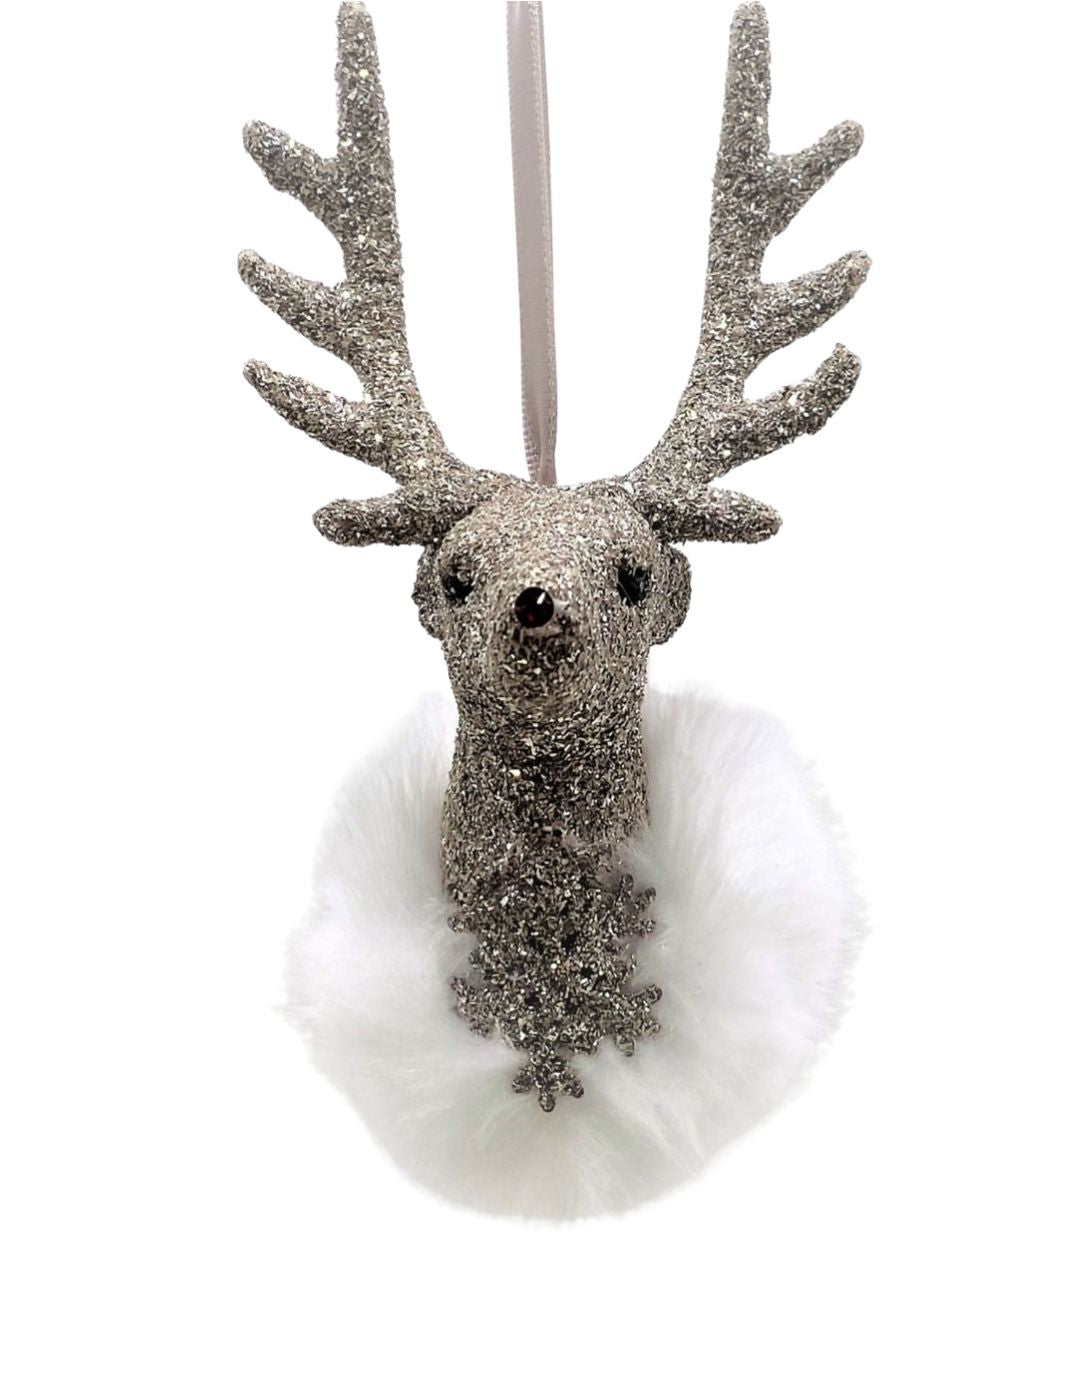 Stag Ornament - Silver, Snow Fur